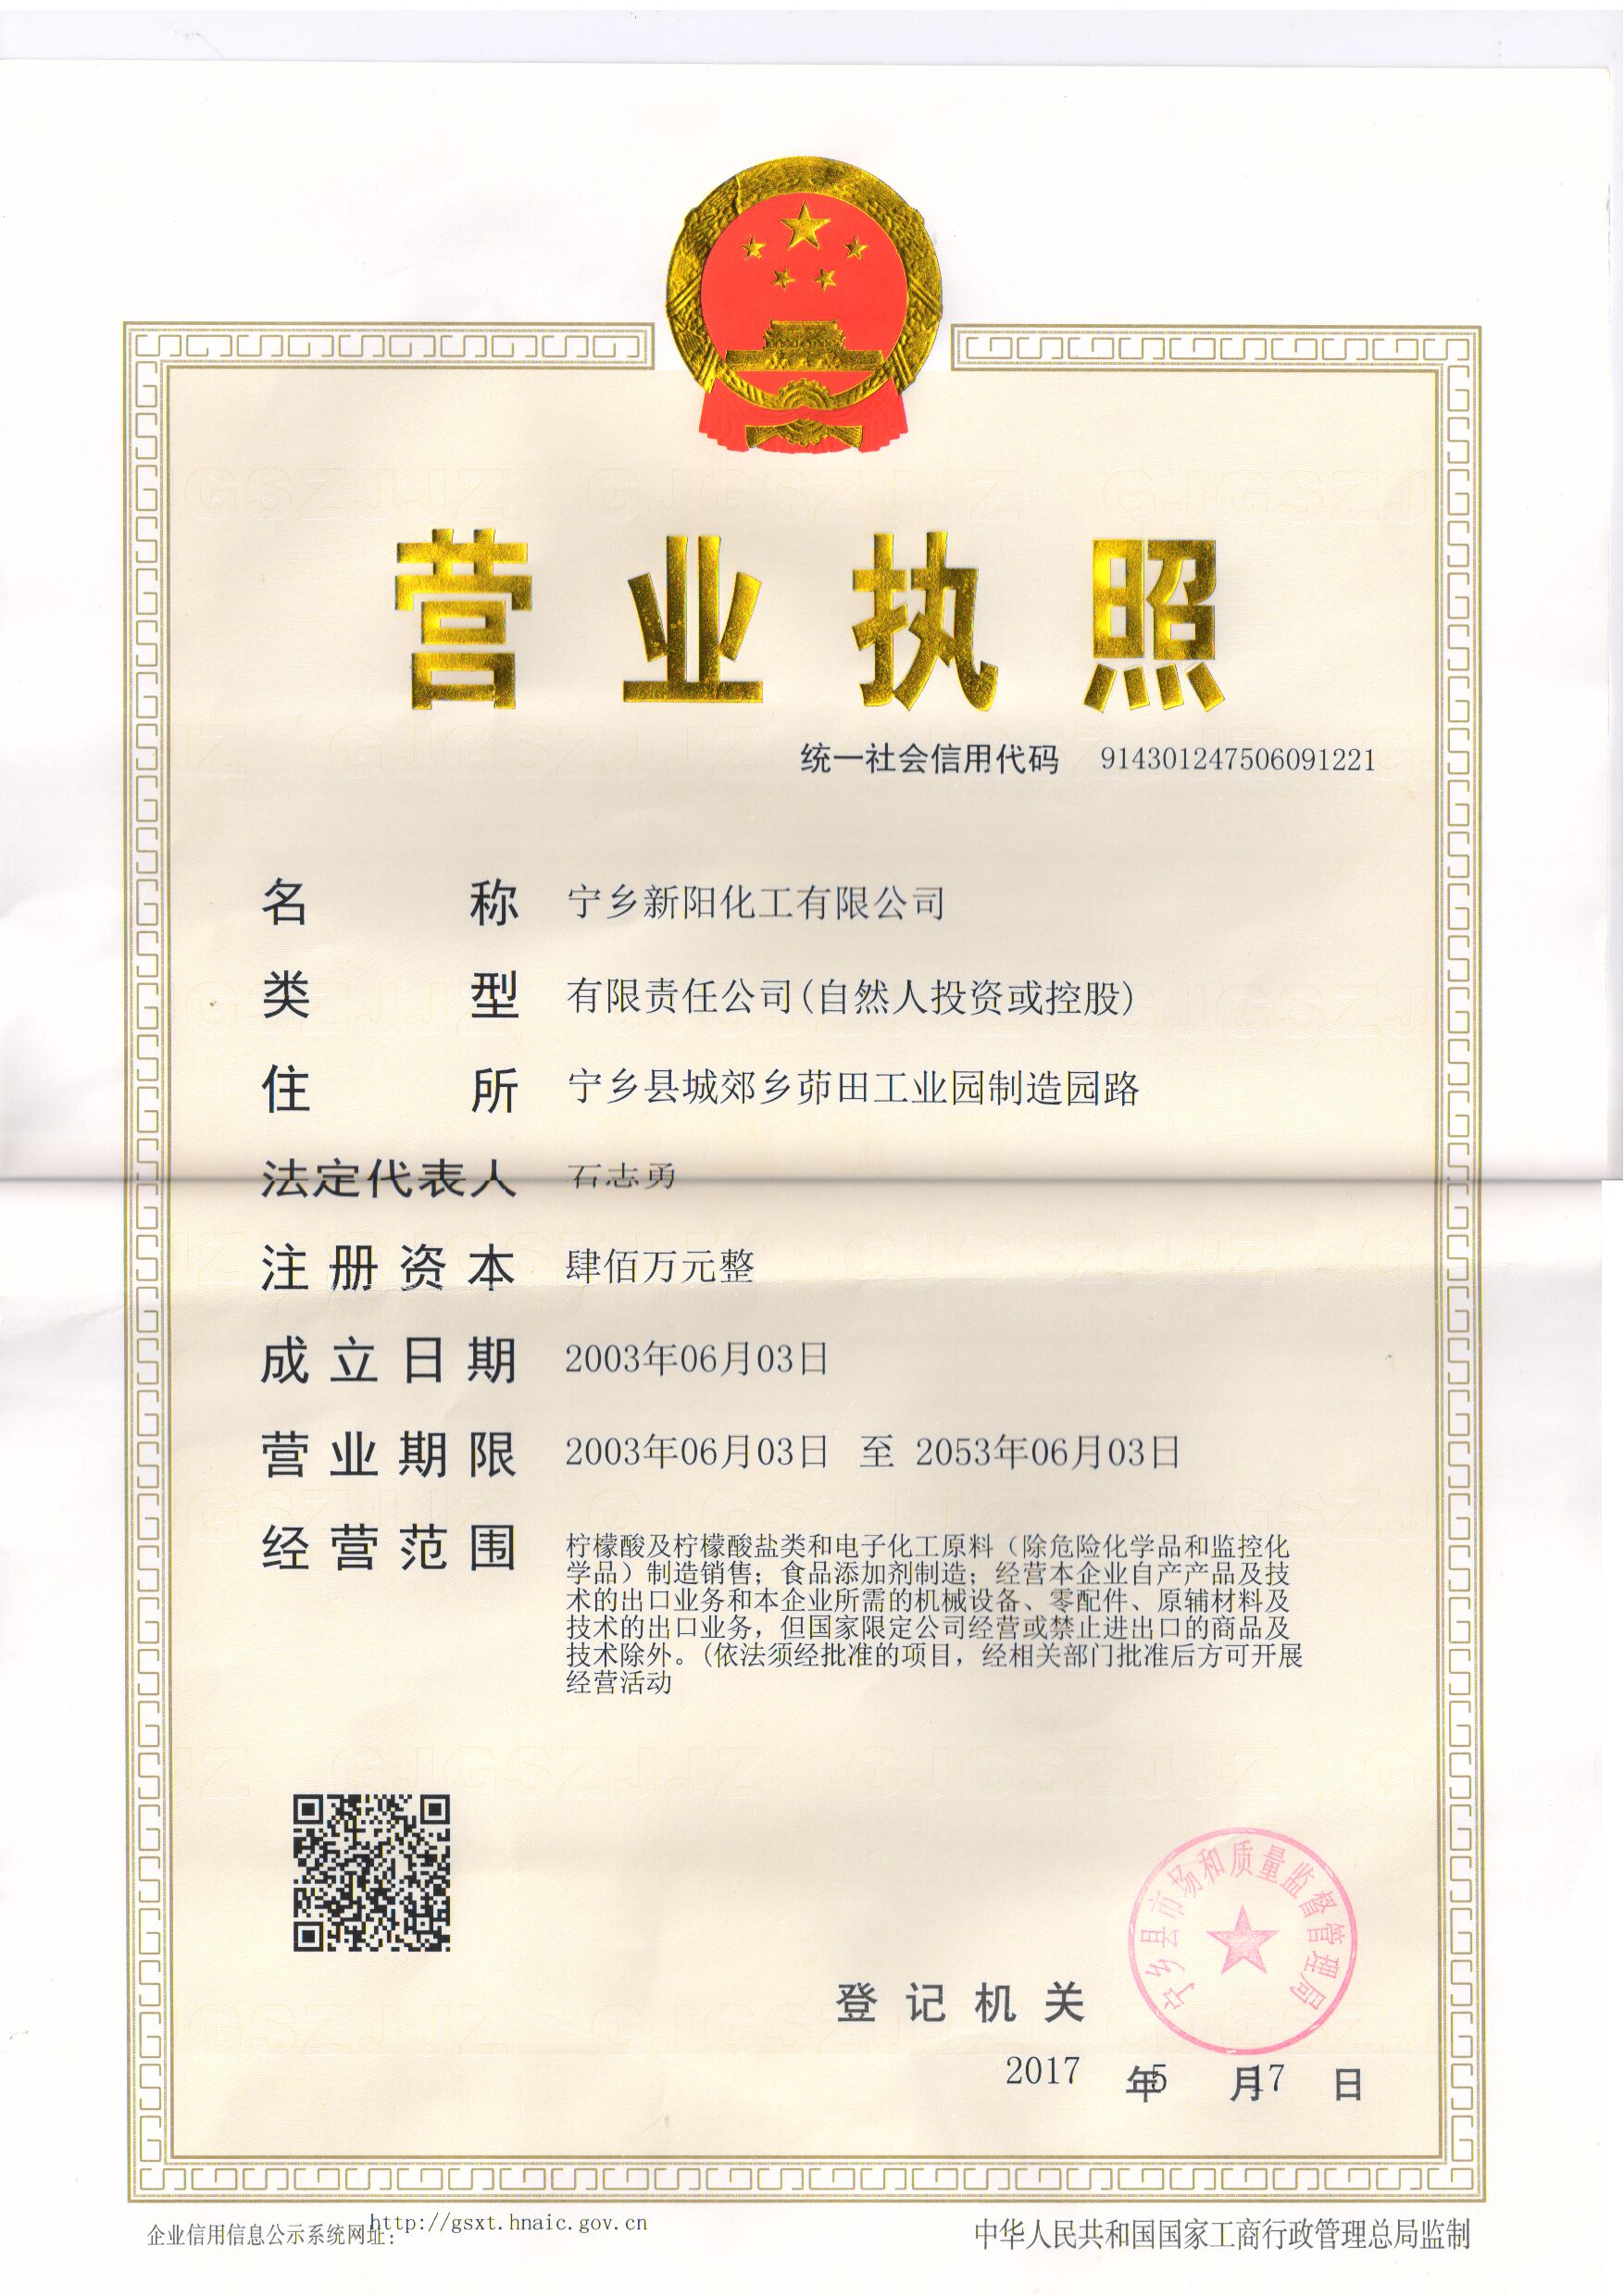 Ningxiang Xinyang Chemical Co., Ltd